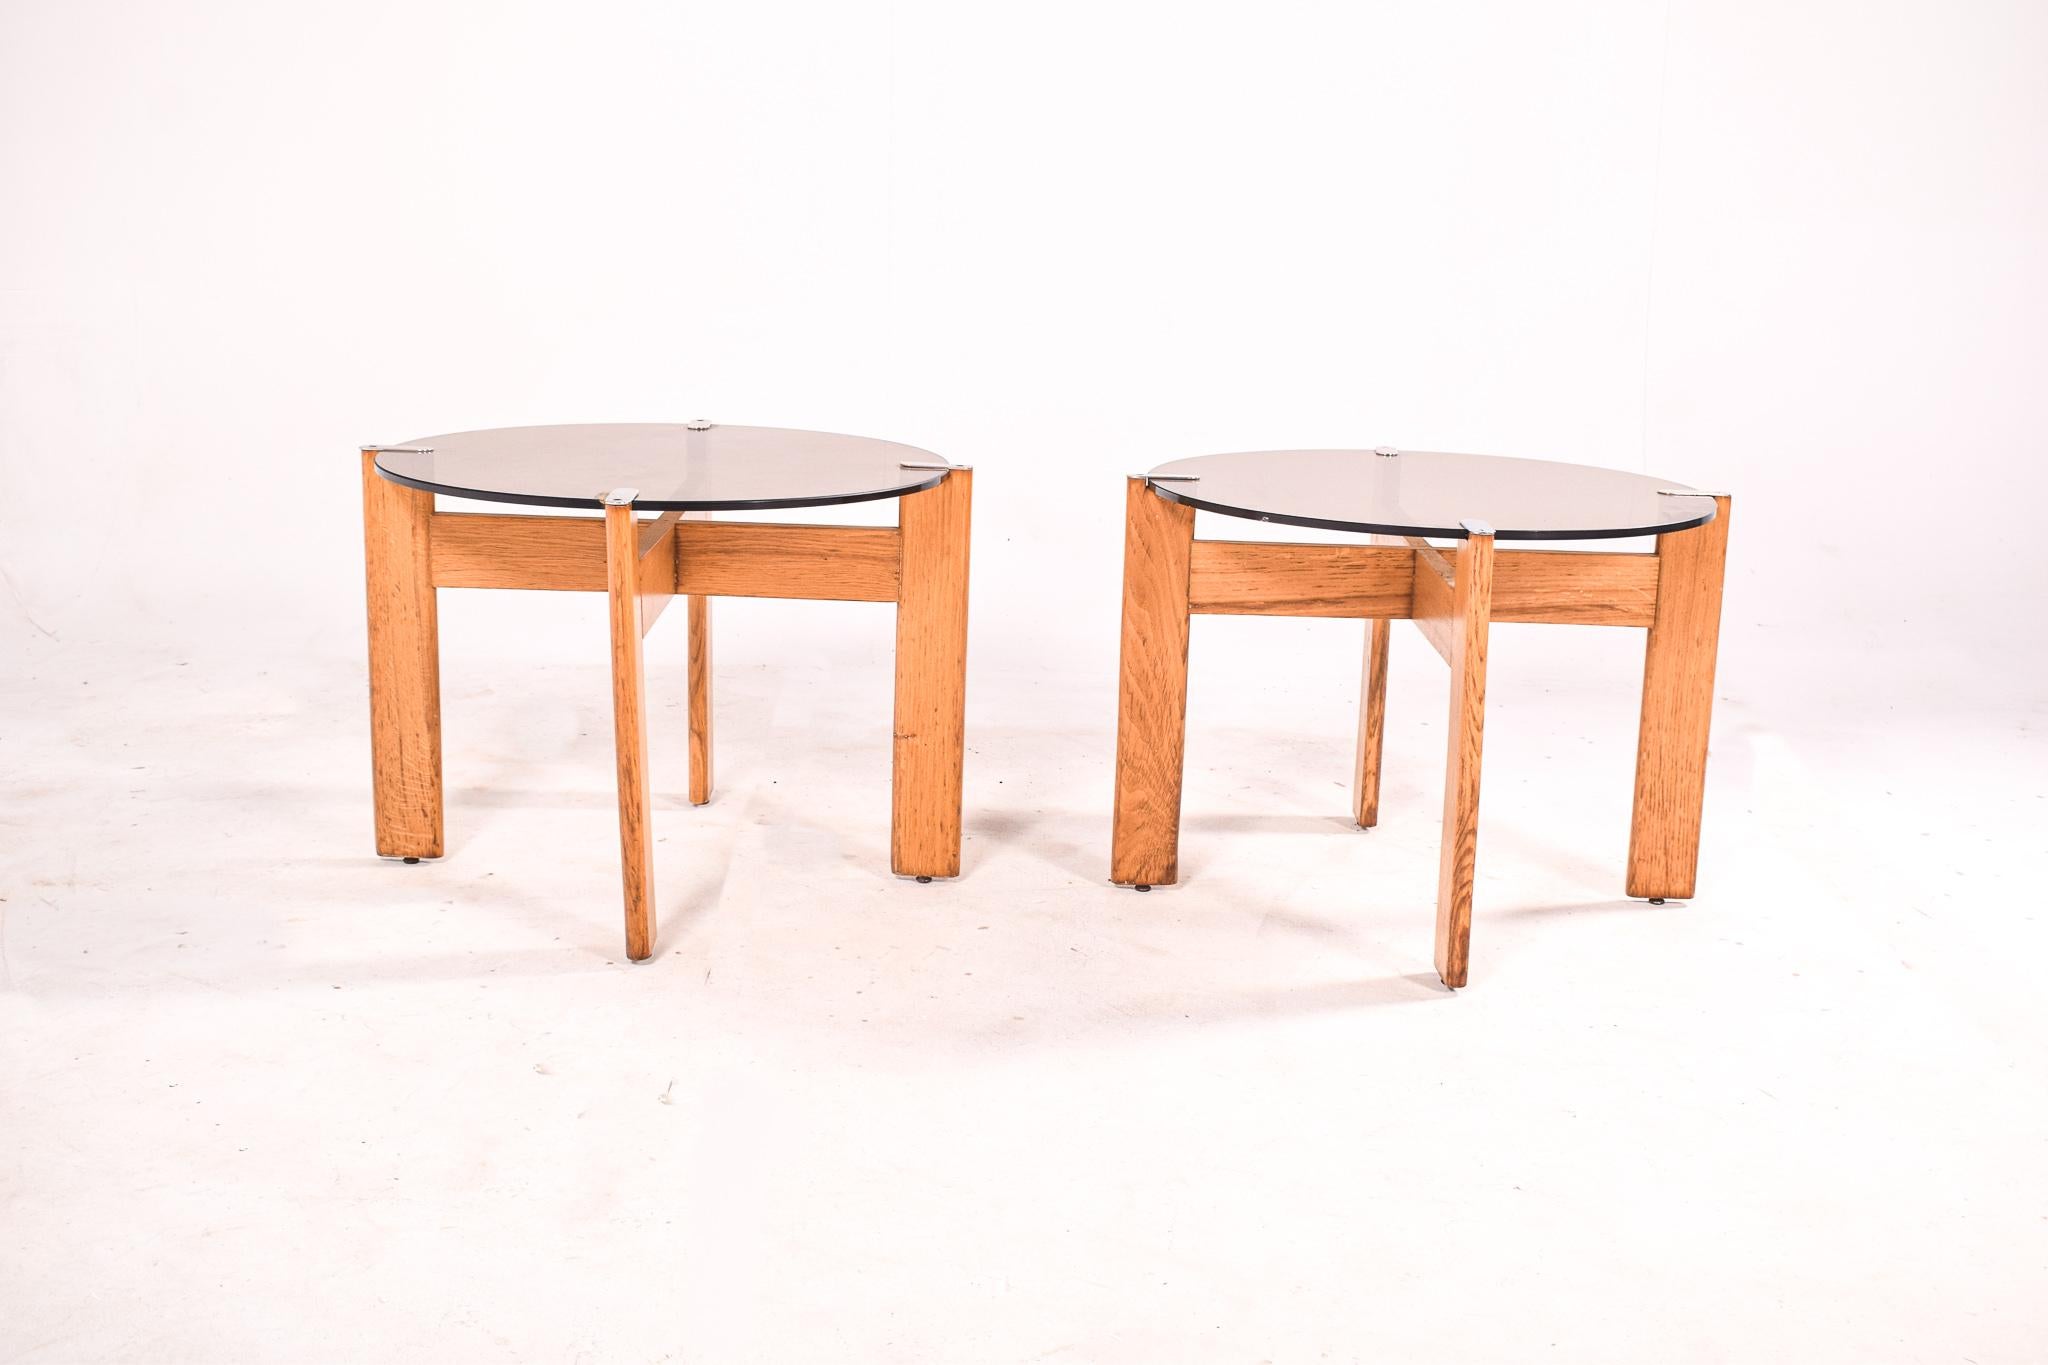 Dieses Paar portugiesischer Beistelltische aus den 1980er Jahren ist ein Beispiel für die schlichte und funktionale Ästhetik, die die Designtrends des Jahrzehnts prägte. Die aus Eichenholz gefertigten Tische weisen eine natürliche, einladende